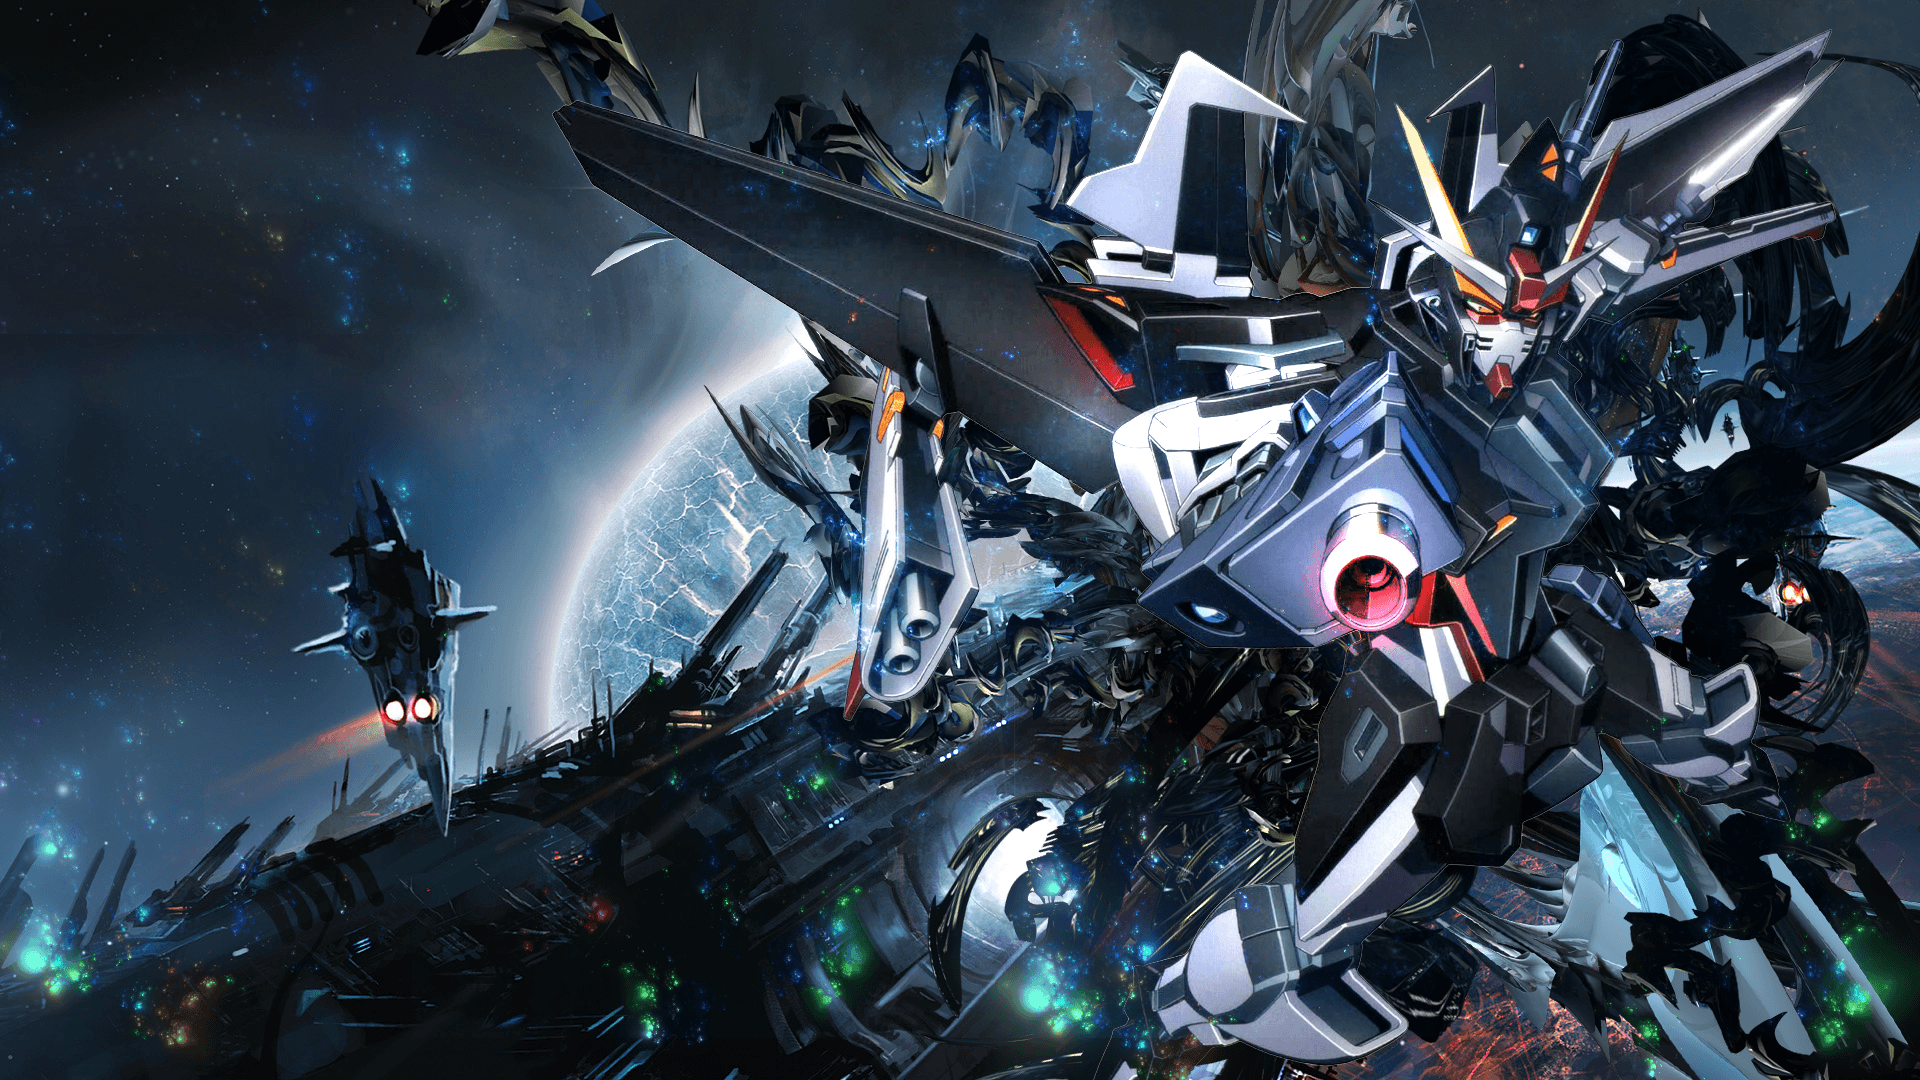 Gundam Desktop Wallpapers Top Free Gundam Desktop Backgrounds Wallpaperaccess